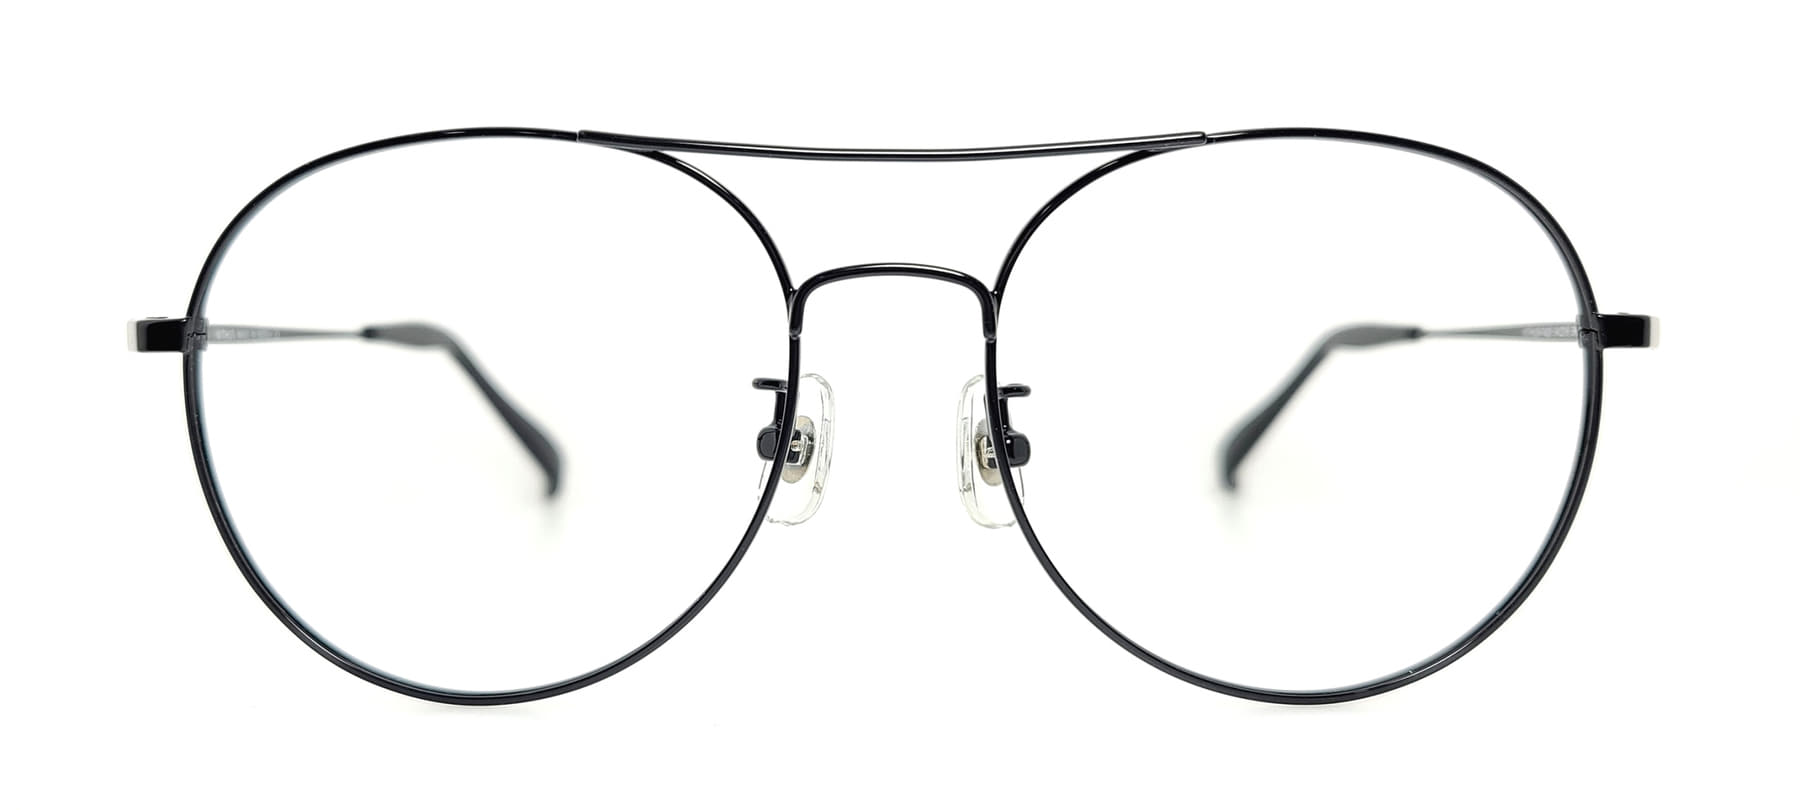 WITHUS-7420, Korean glasses, sunglasses, eyeglasses, glasses